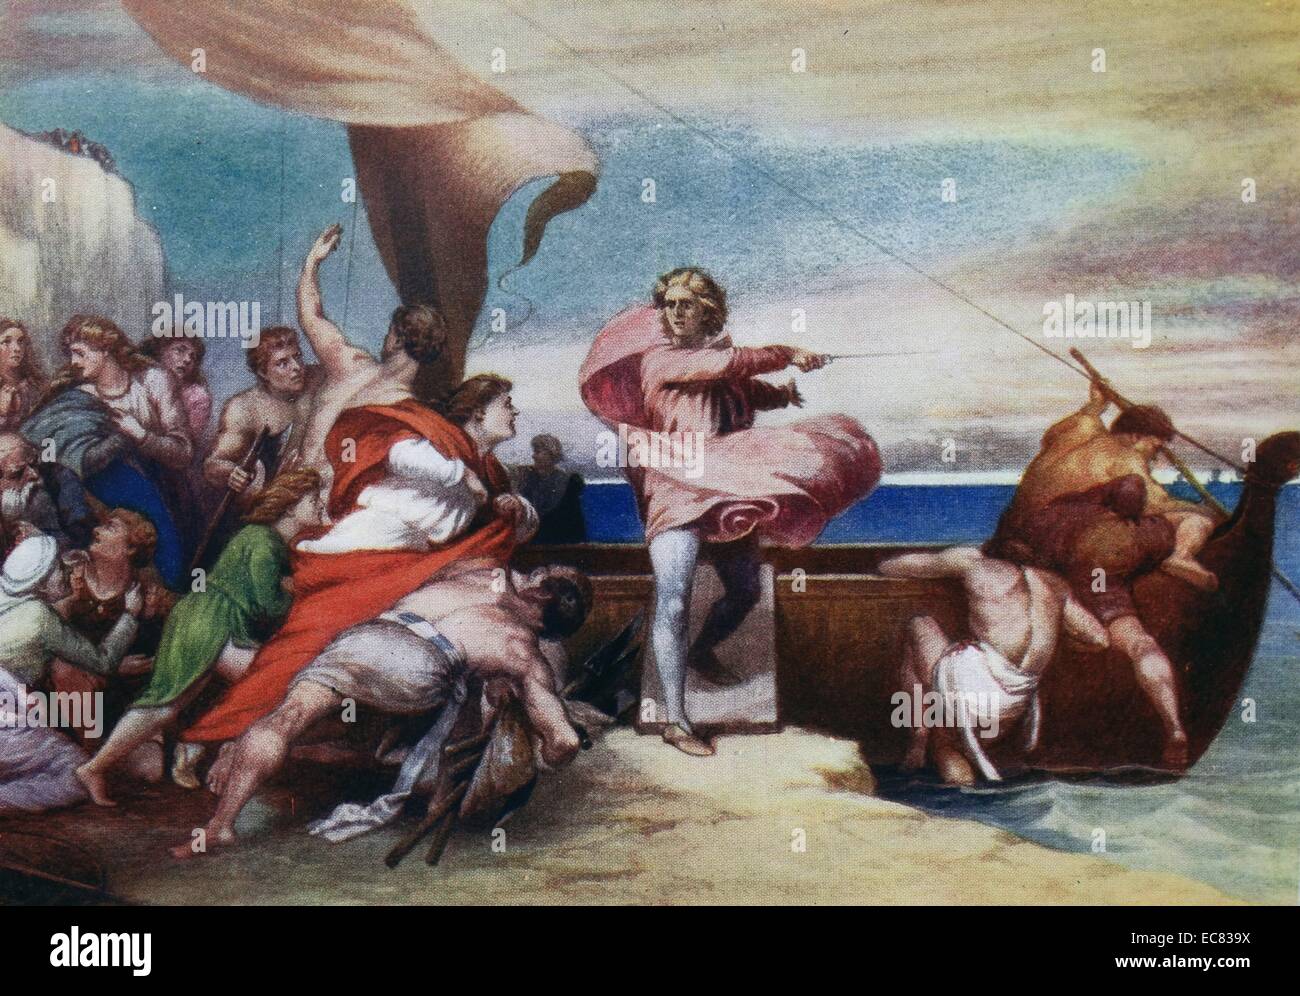 La peinture intitulée 'Alfred incitant les Saxons pour empêcher le débarquement des Danois". Peint par George Frederic Watts (1817-1904) Peintre et sculpteur victorien anglais associés à mouvement symboliste. Datée 1846 Banque D'Images